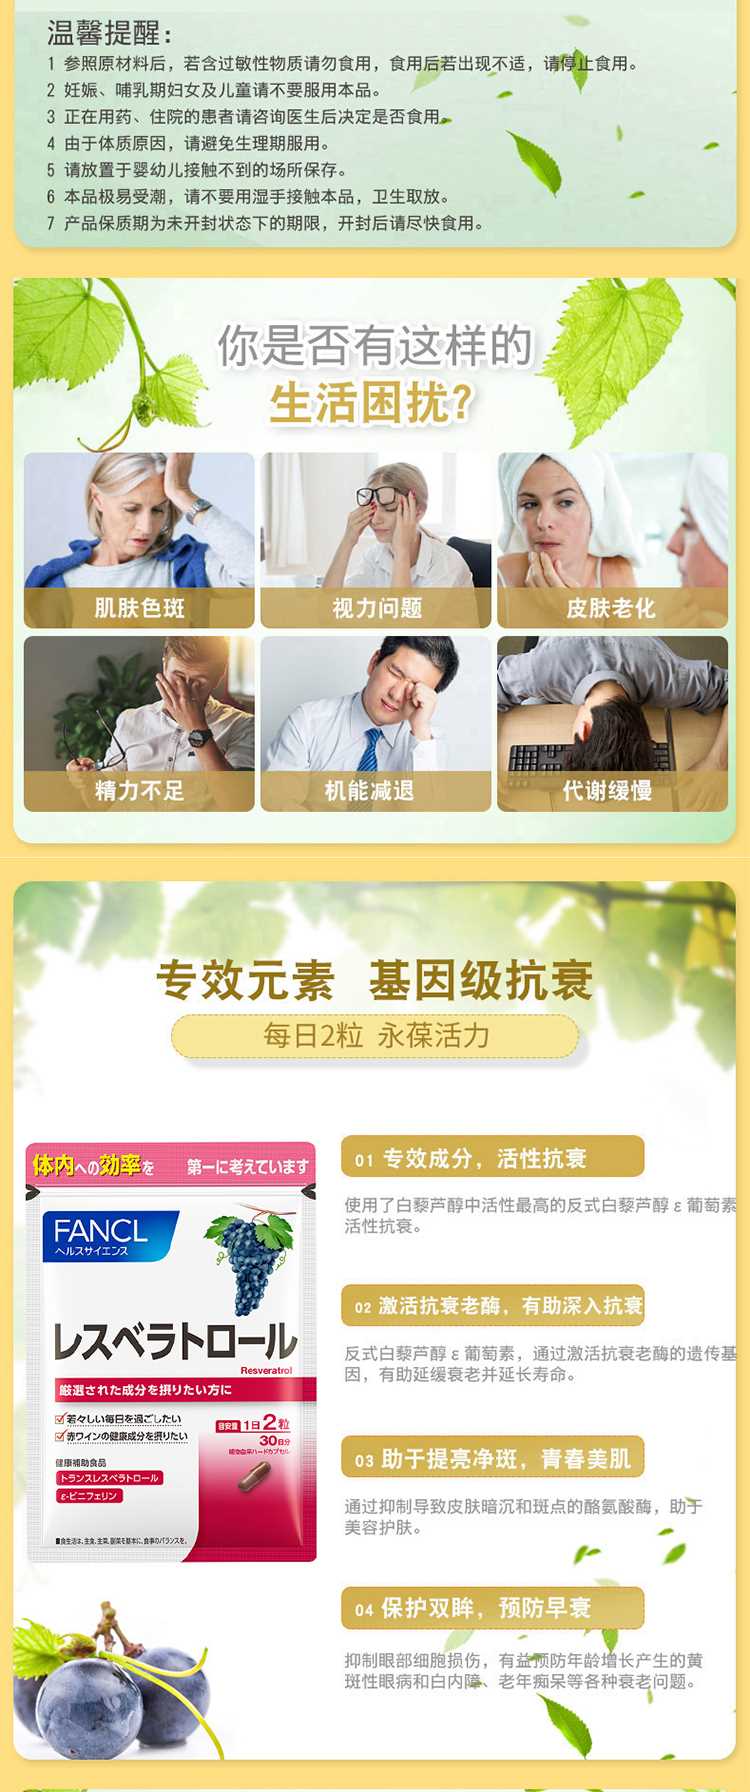 FANCL-芳珂-葡萄籽精华白藜芦醇60片-30天_02.jpg